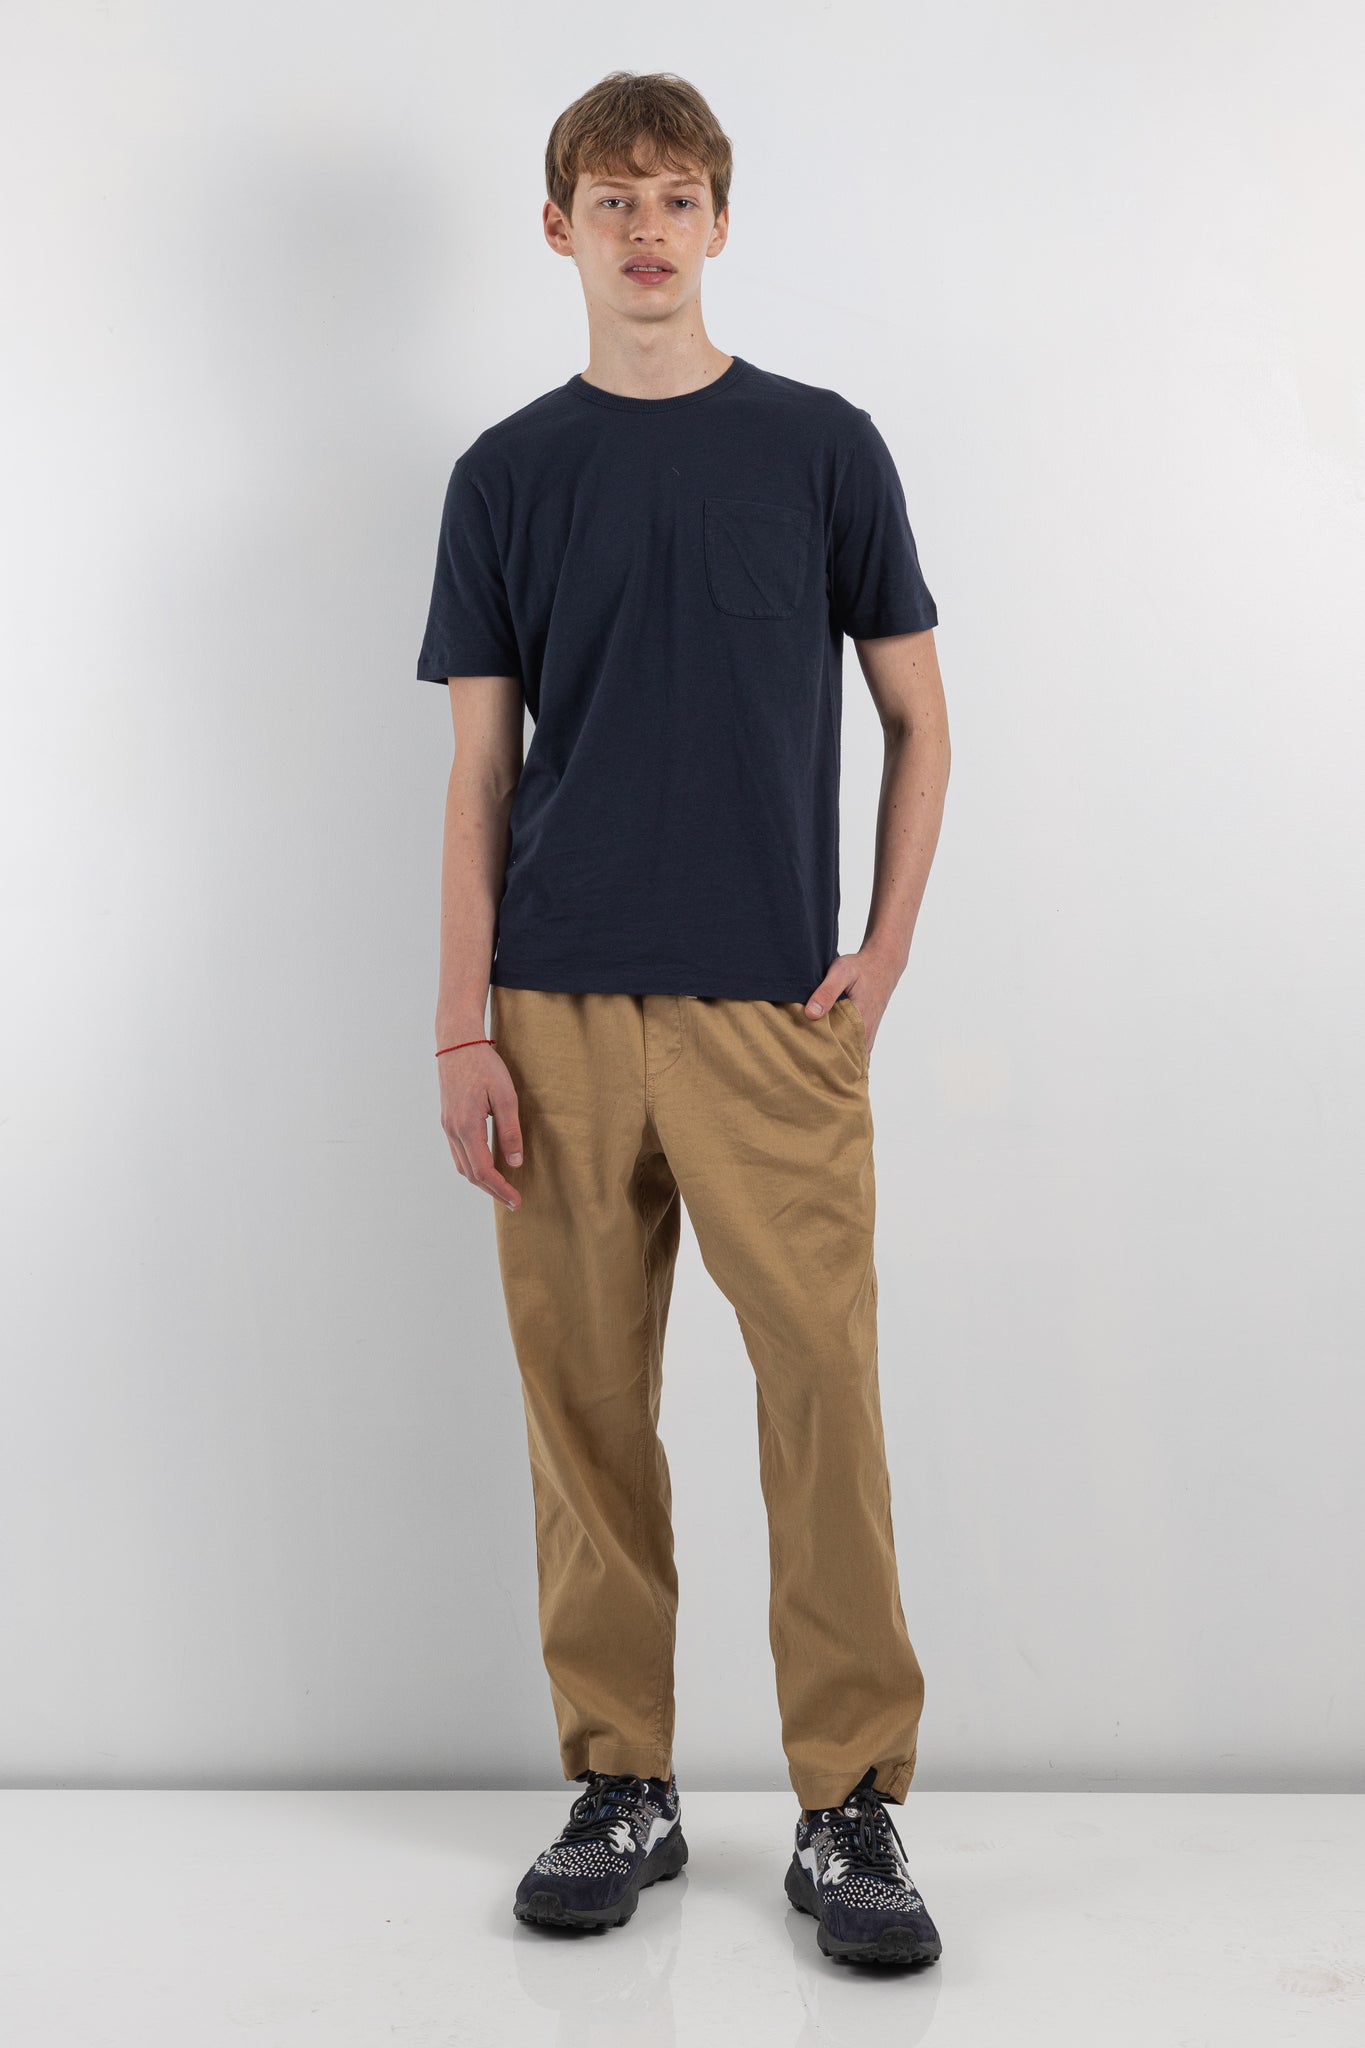 Mens Trouser | YMC alva skate trouser | The Standard Store